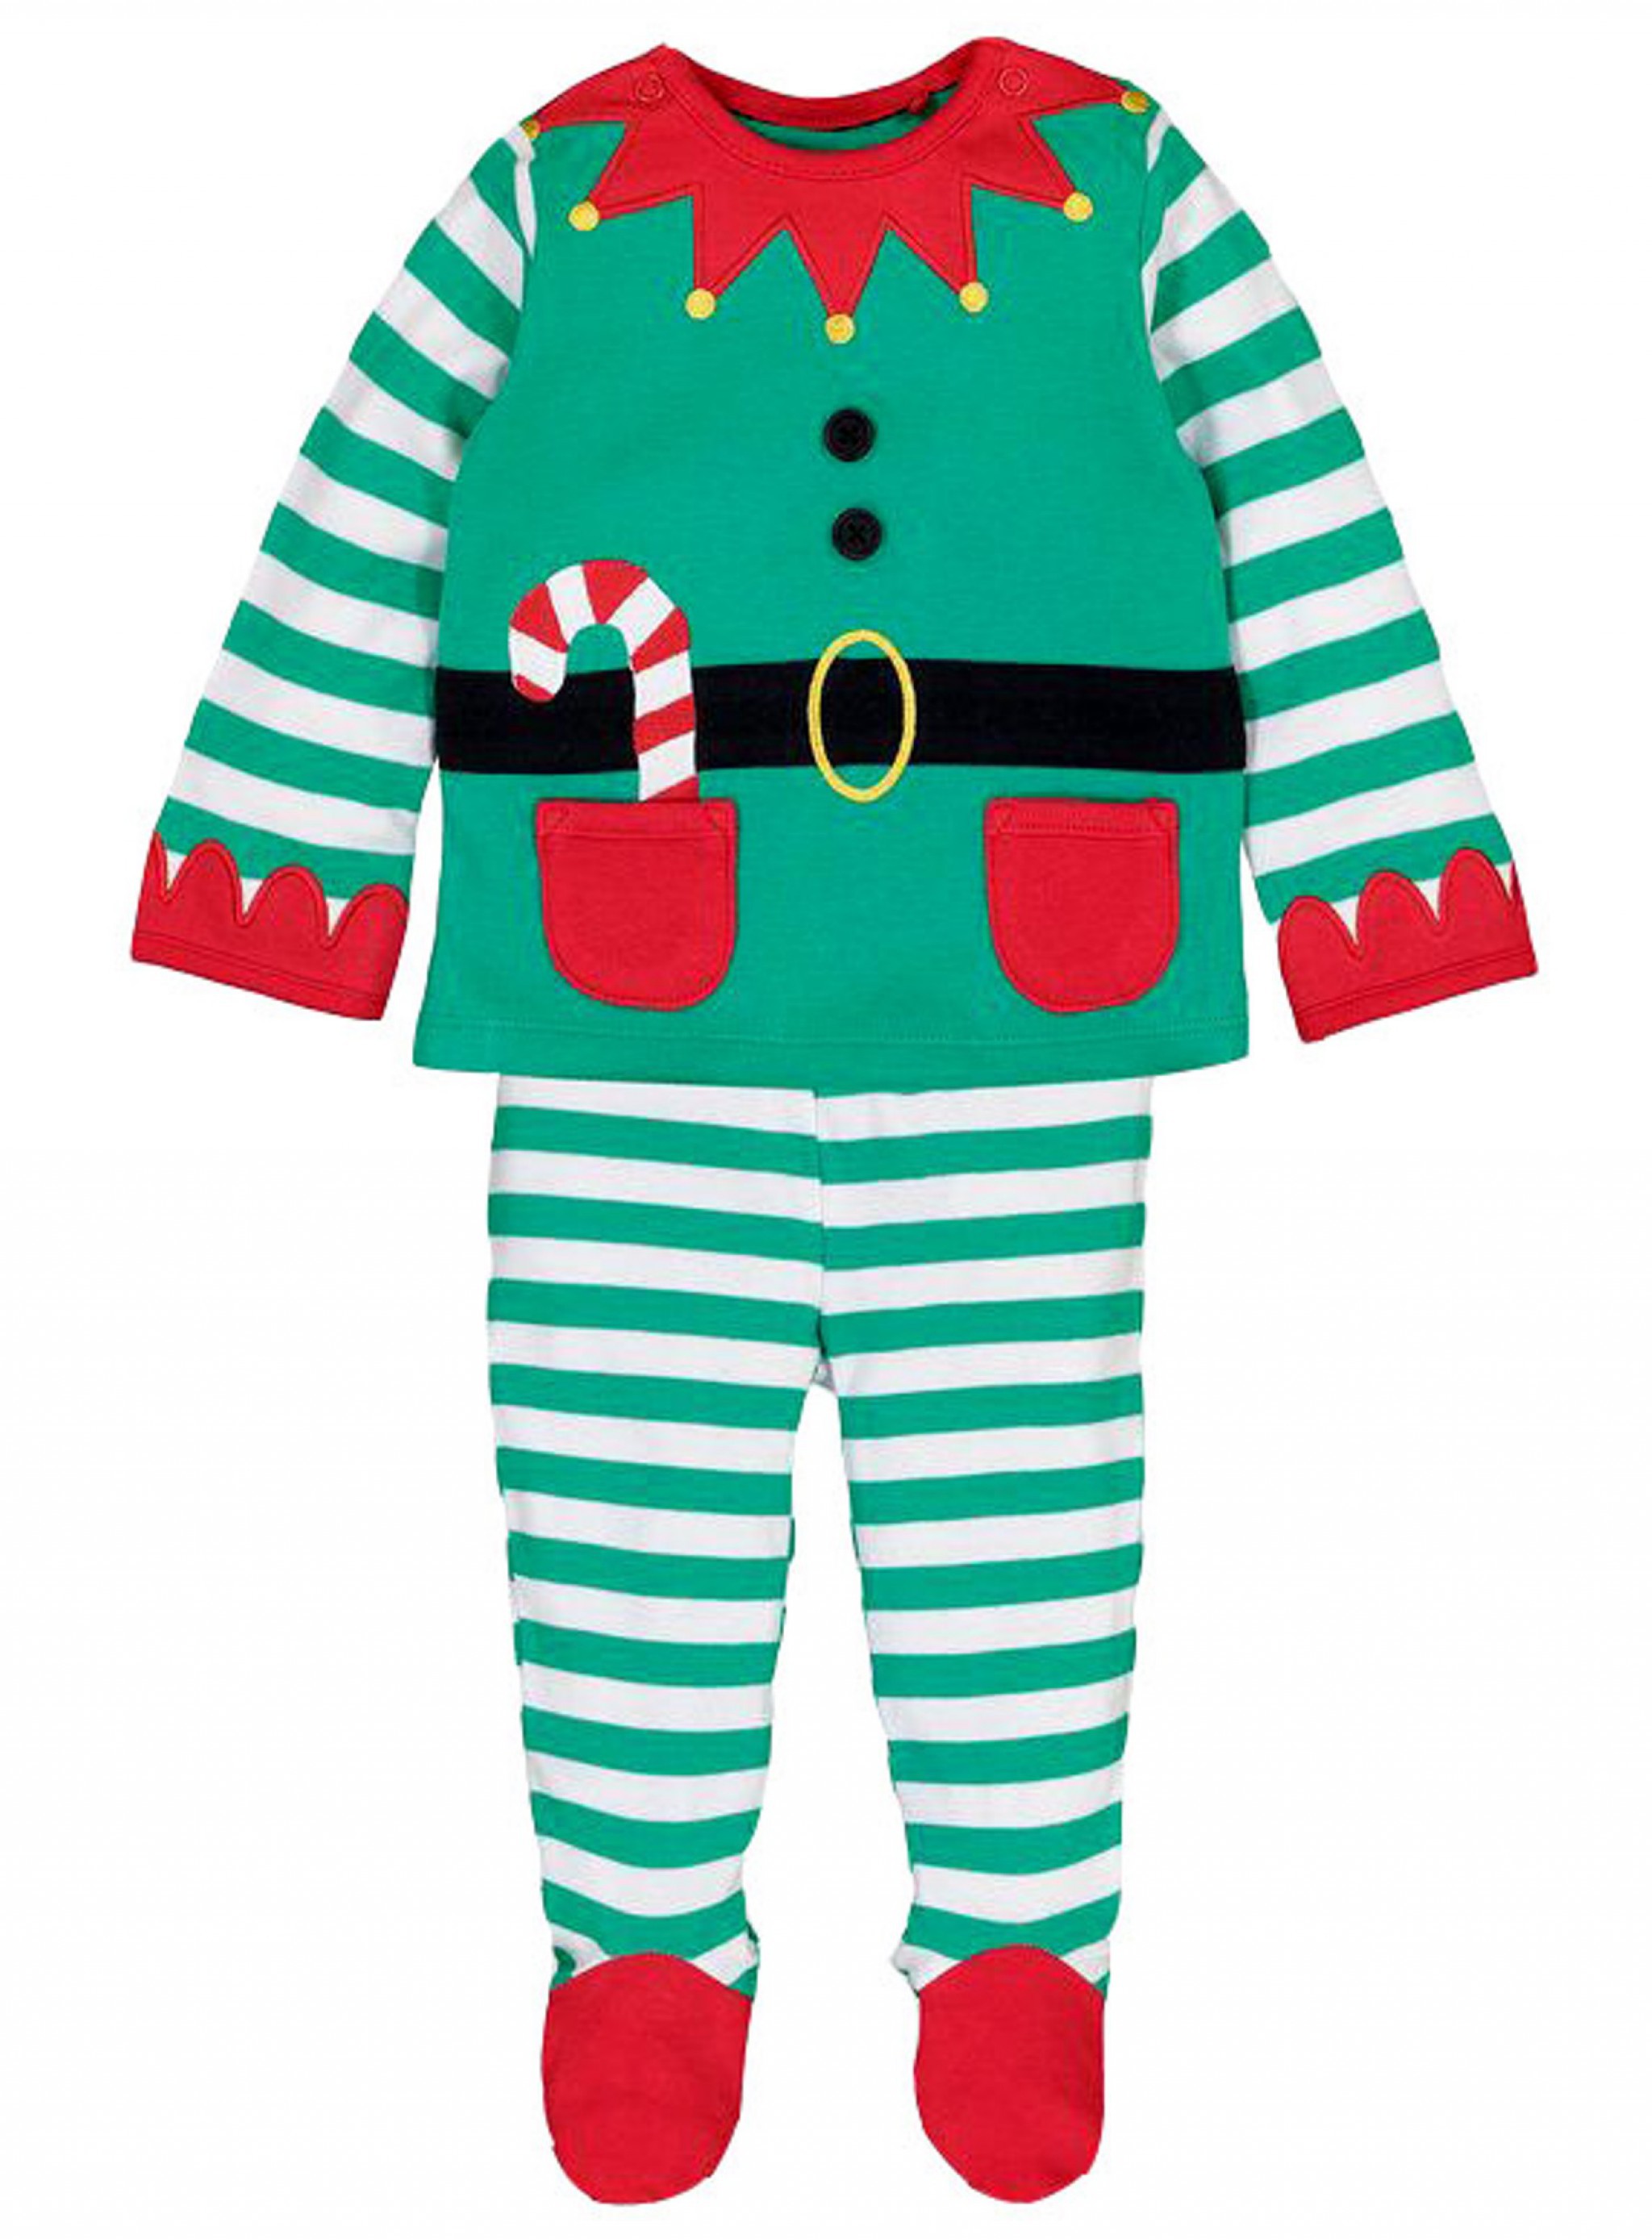 Baby Mädchen Weihnachten Tops+Streifen Hose+Hut Jacke Sets Outfit 9-24 Monate 